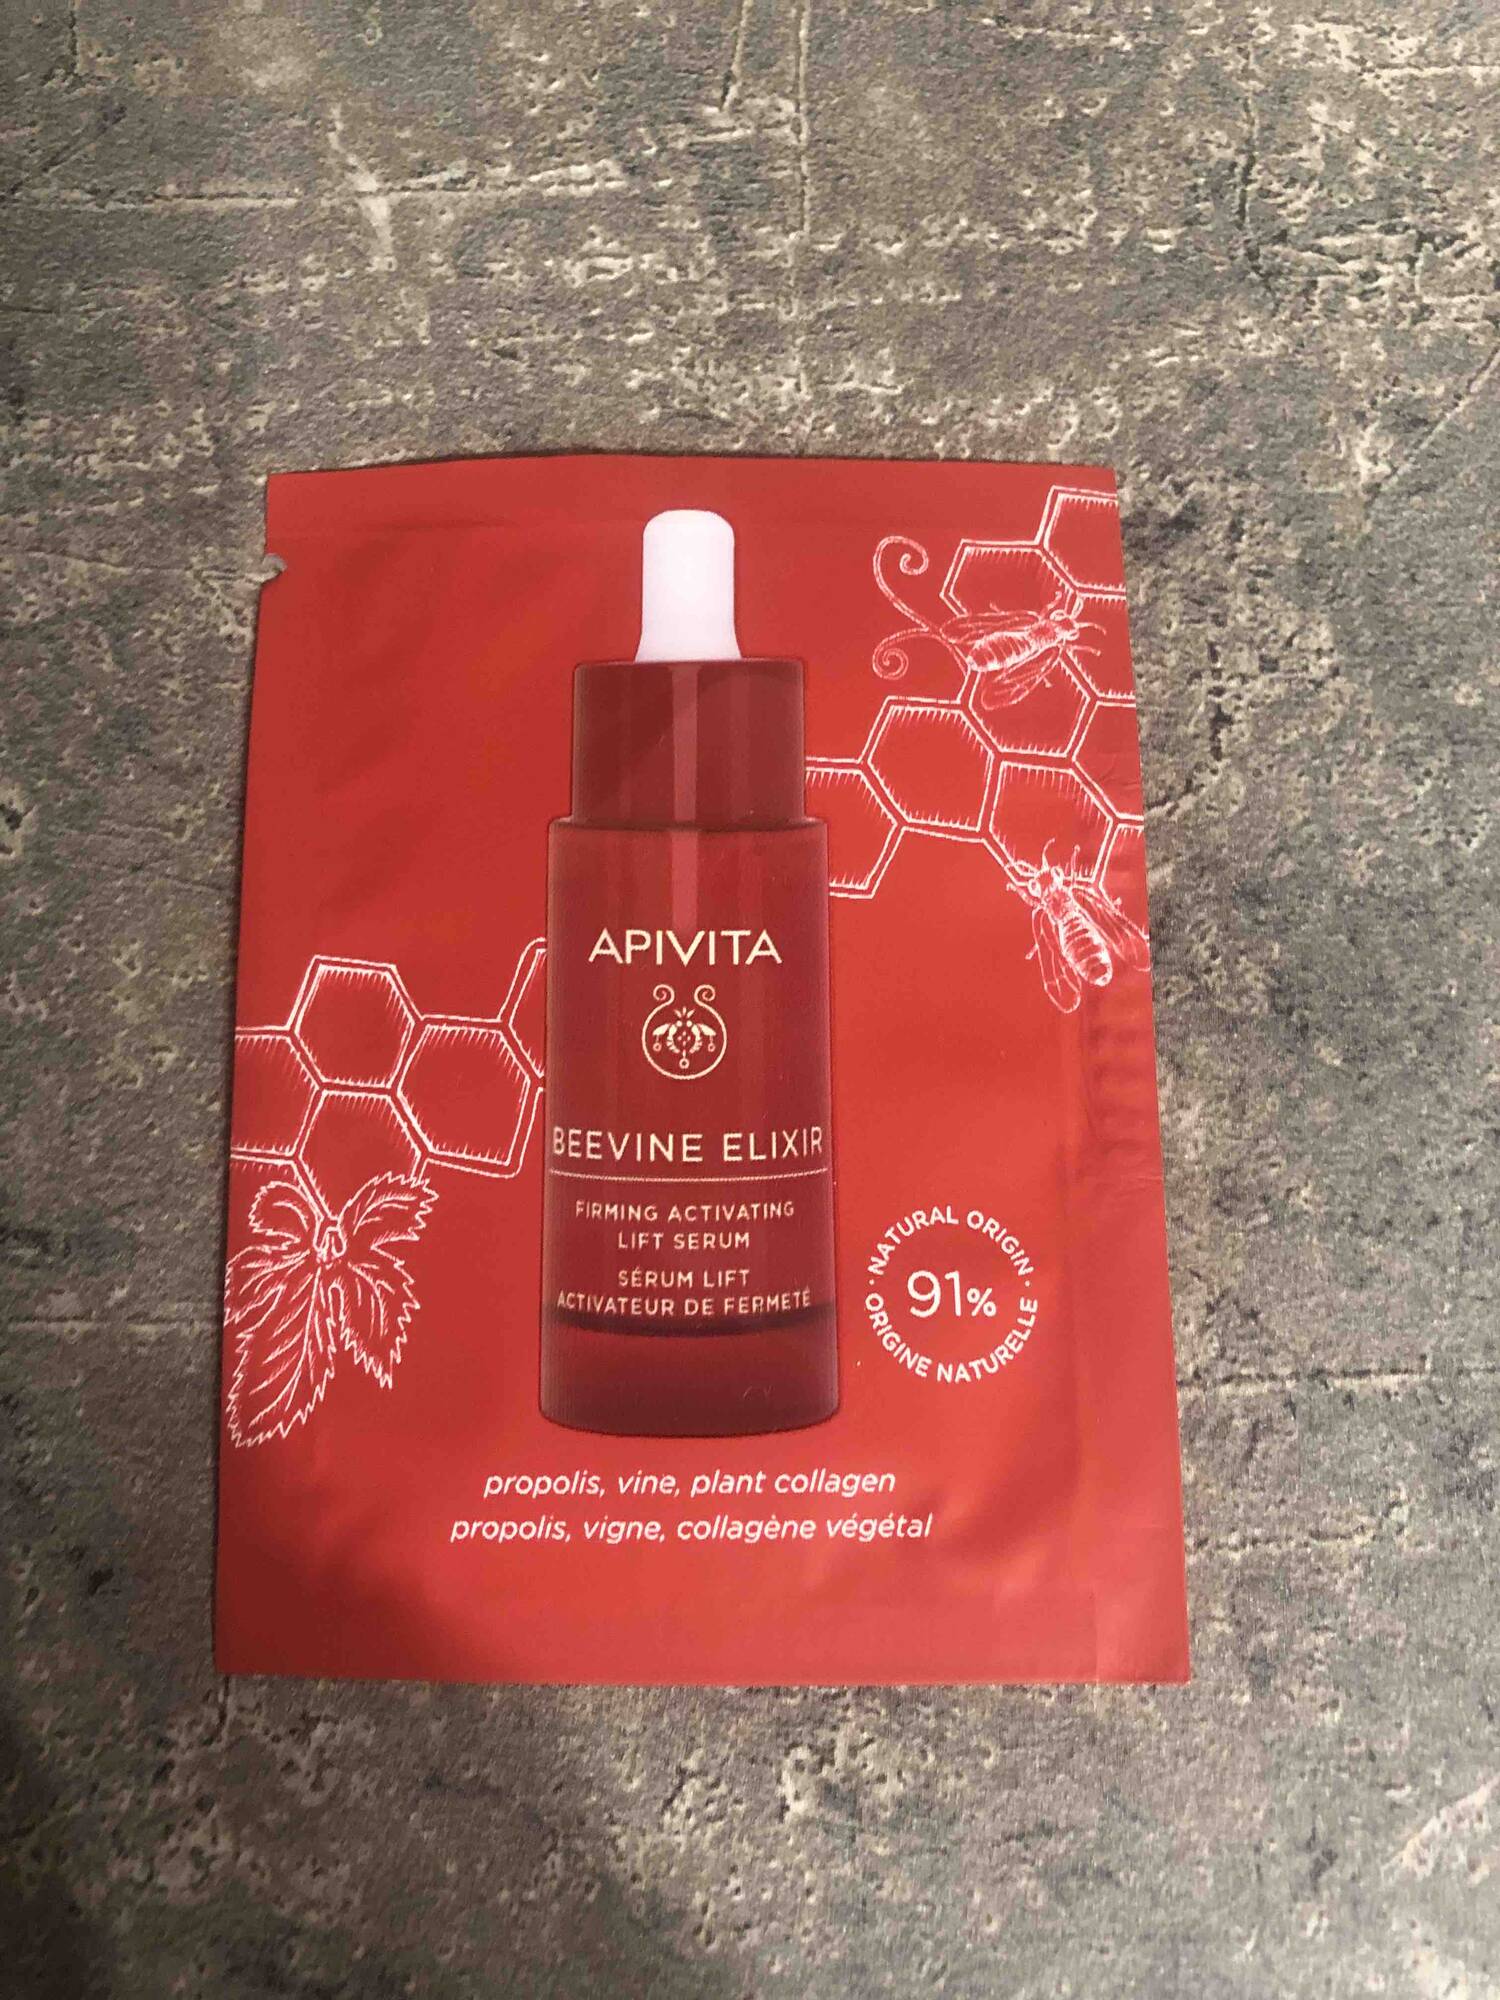 APIVITA - Beevine elixir - Sérum lift activateur de femeté